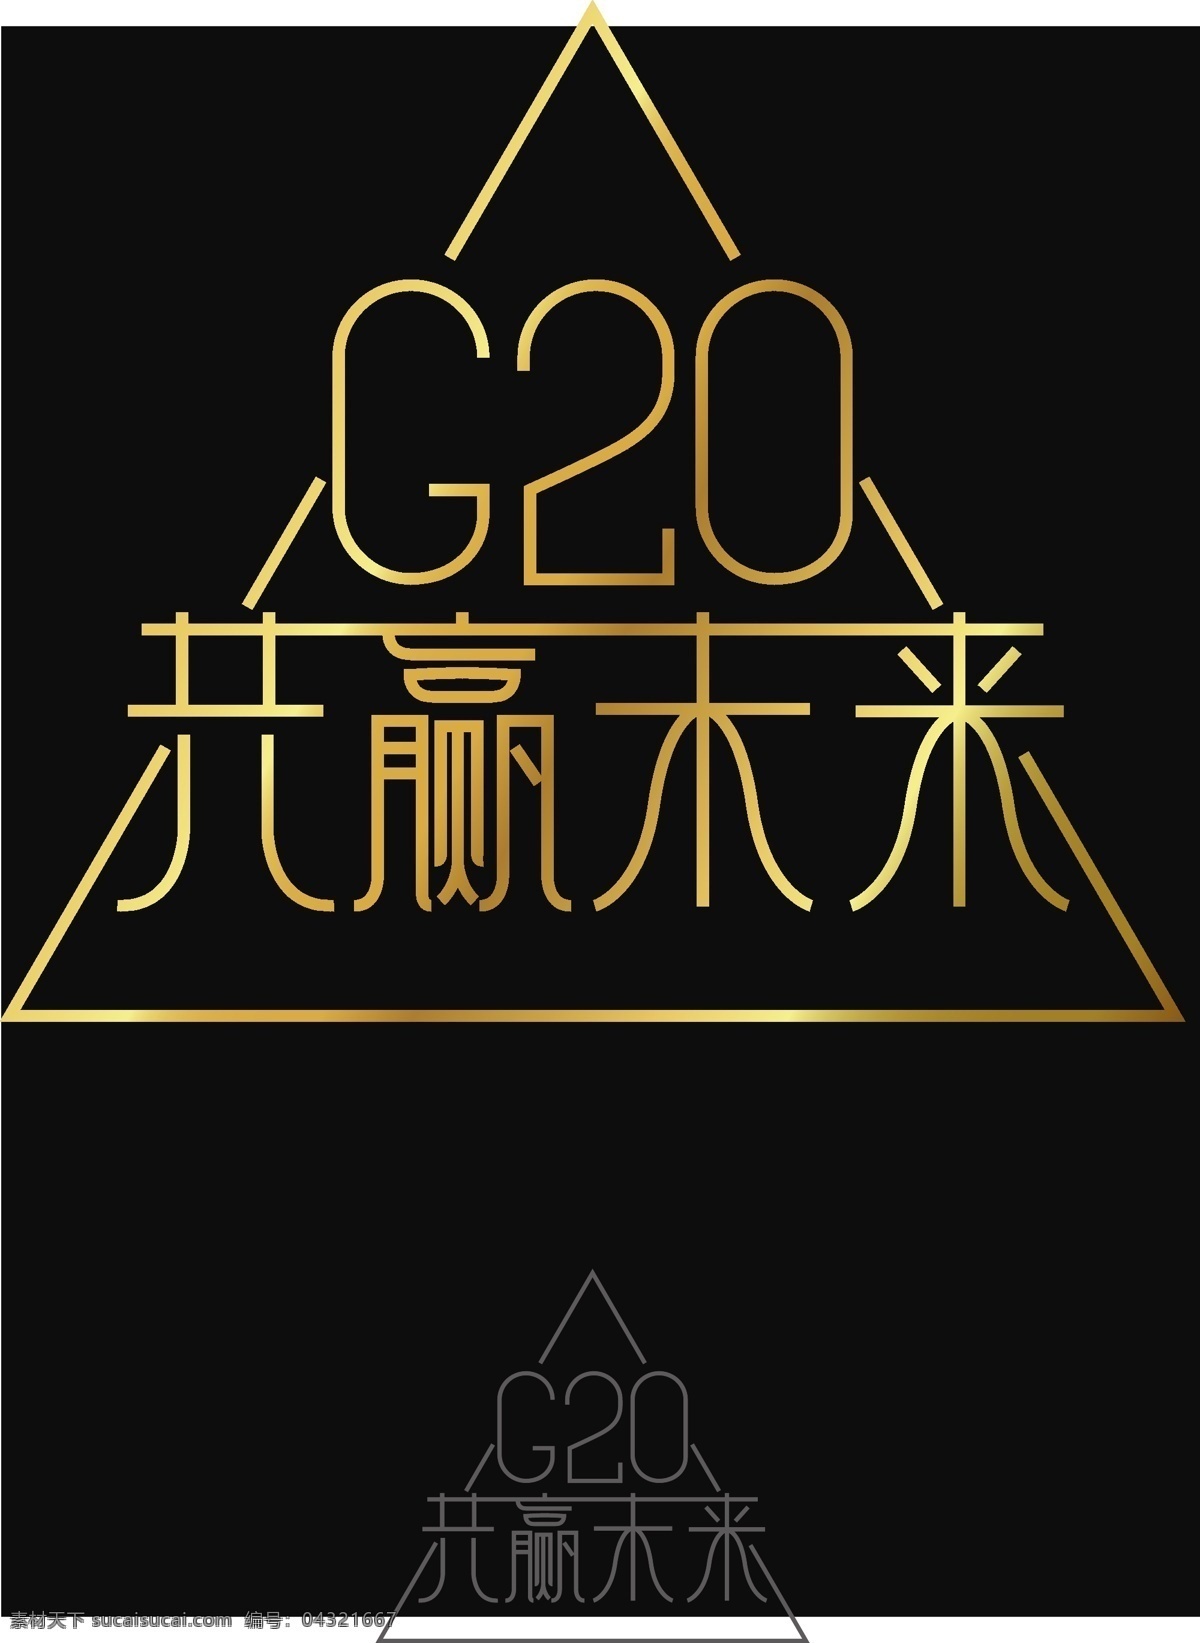 g20 峰会 创意 字体 立体 艺术 字 大气 金色 线条 简约 字体设计 精美 立体字